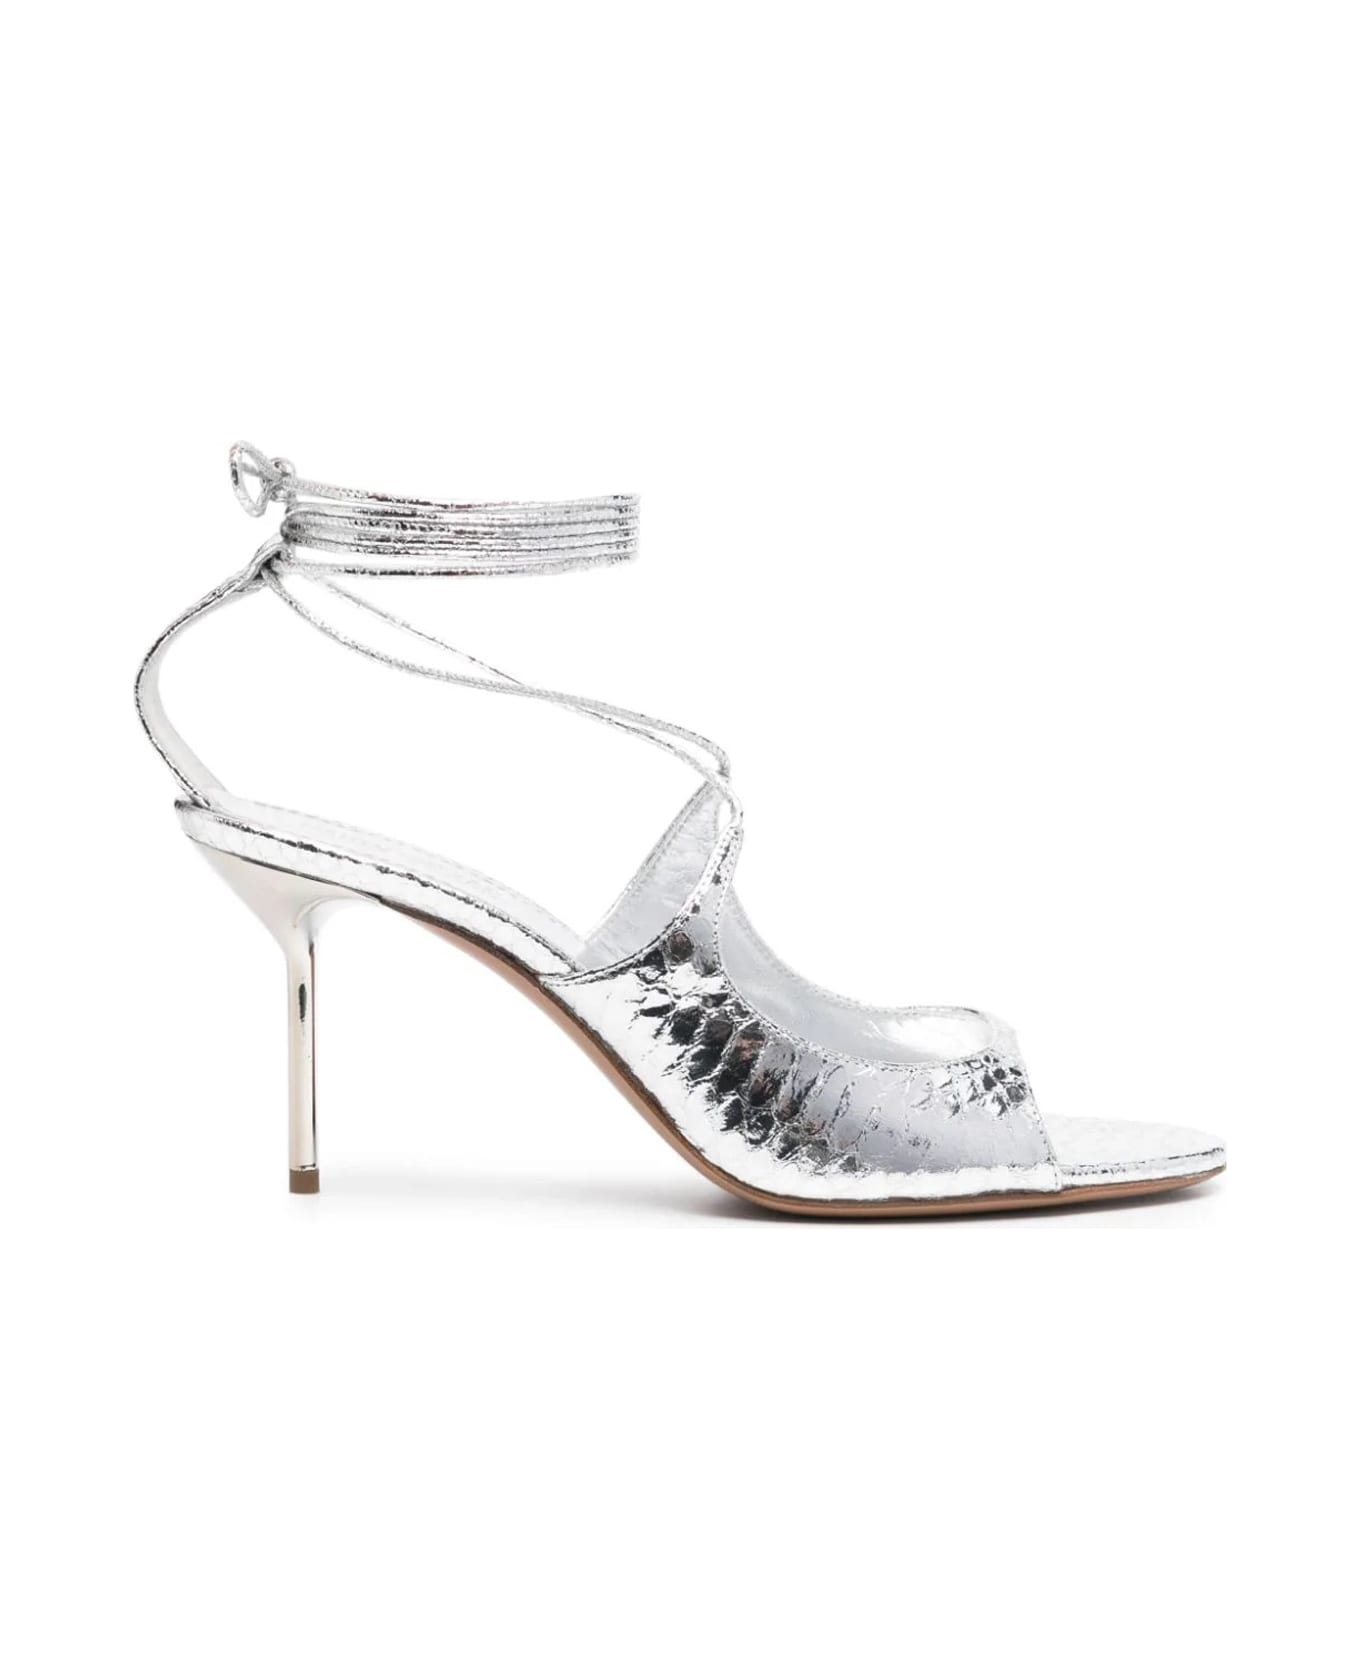 Paris Texas Heeled Sandals - Silver サンダル